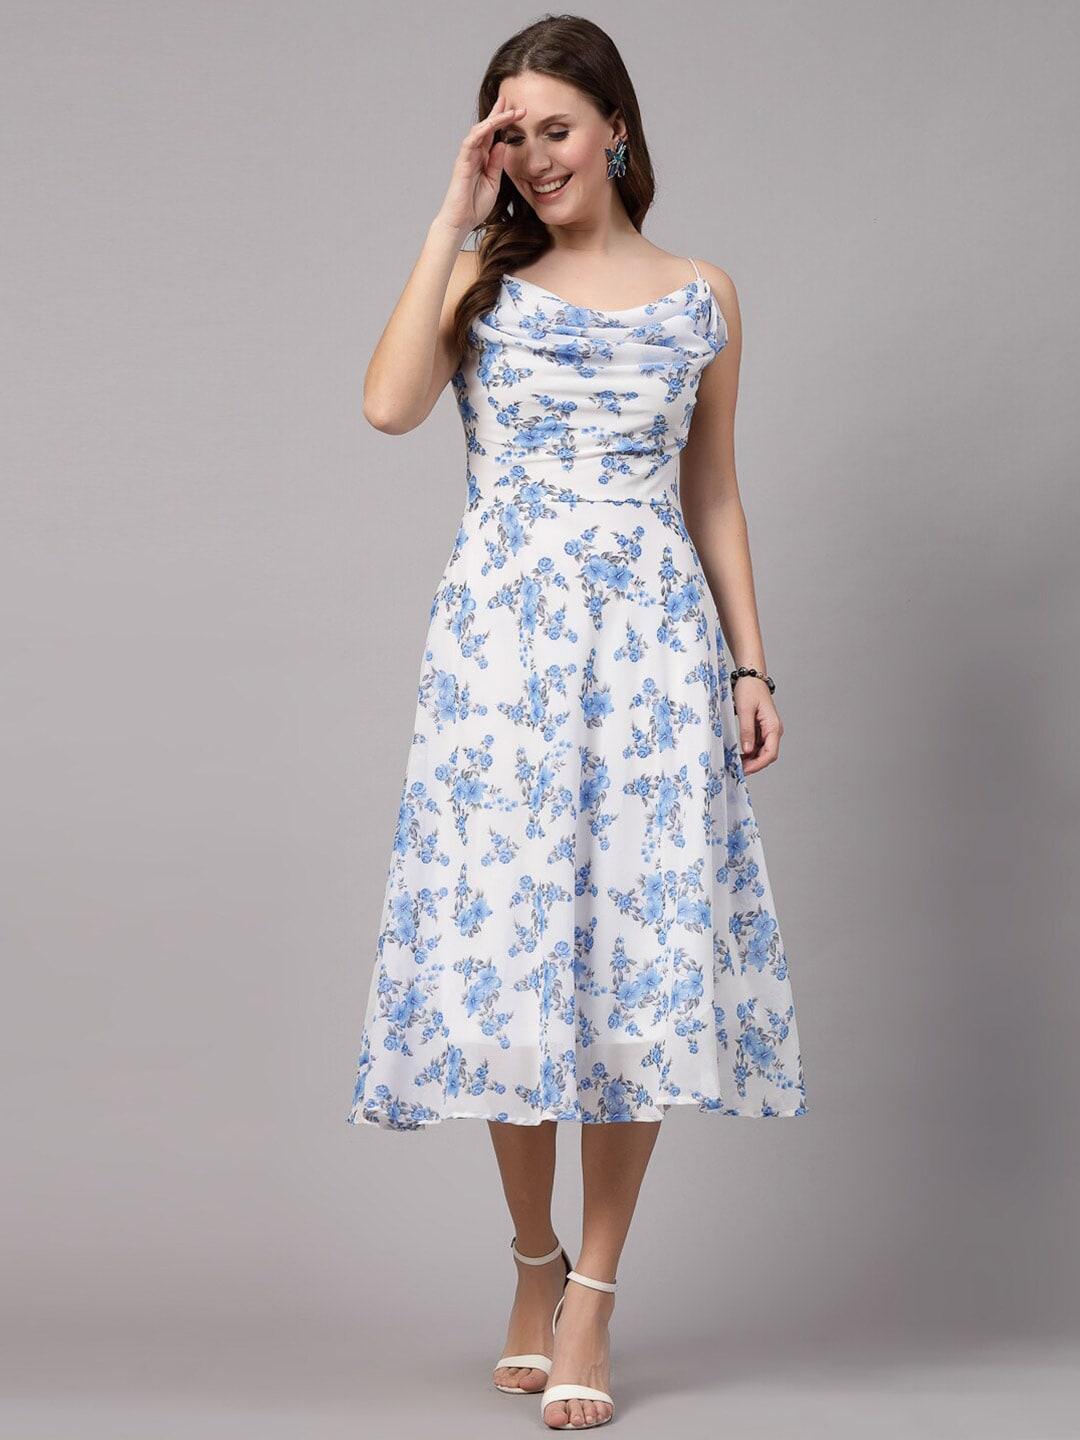 aayu-floral-printed-georgette-fit-&-flare-midi-dress